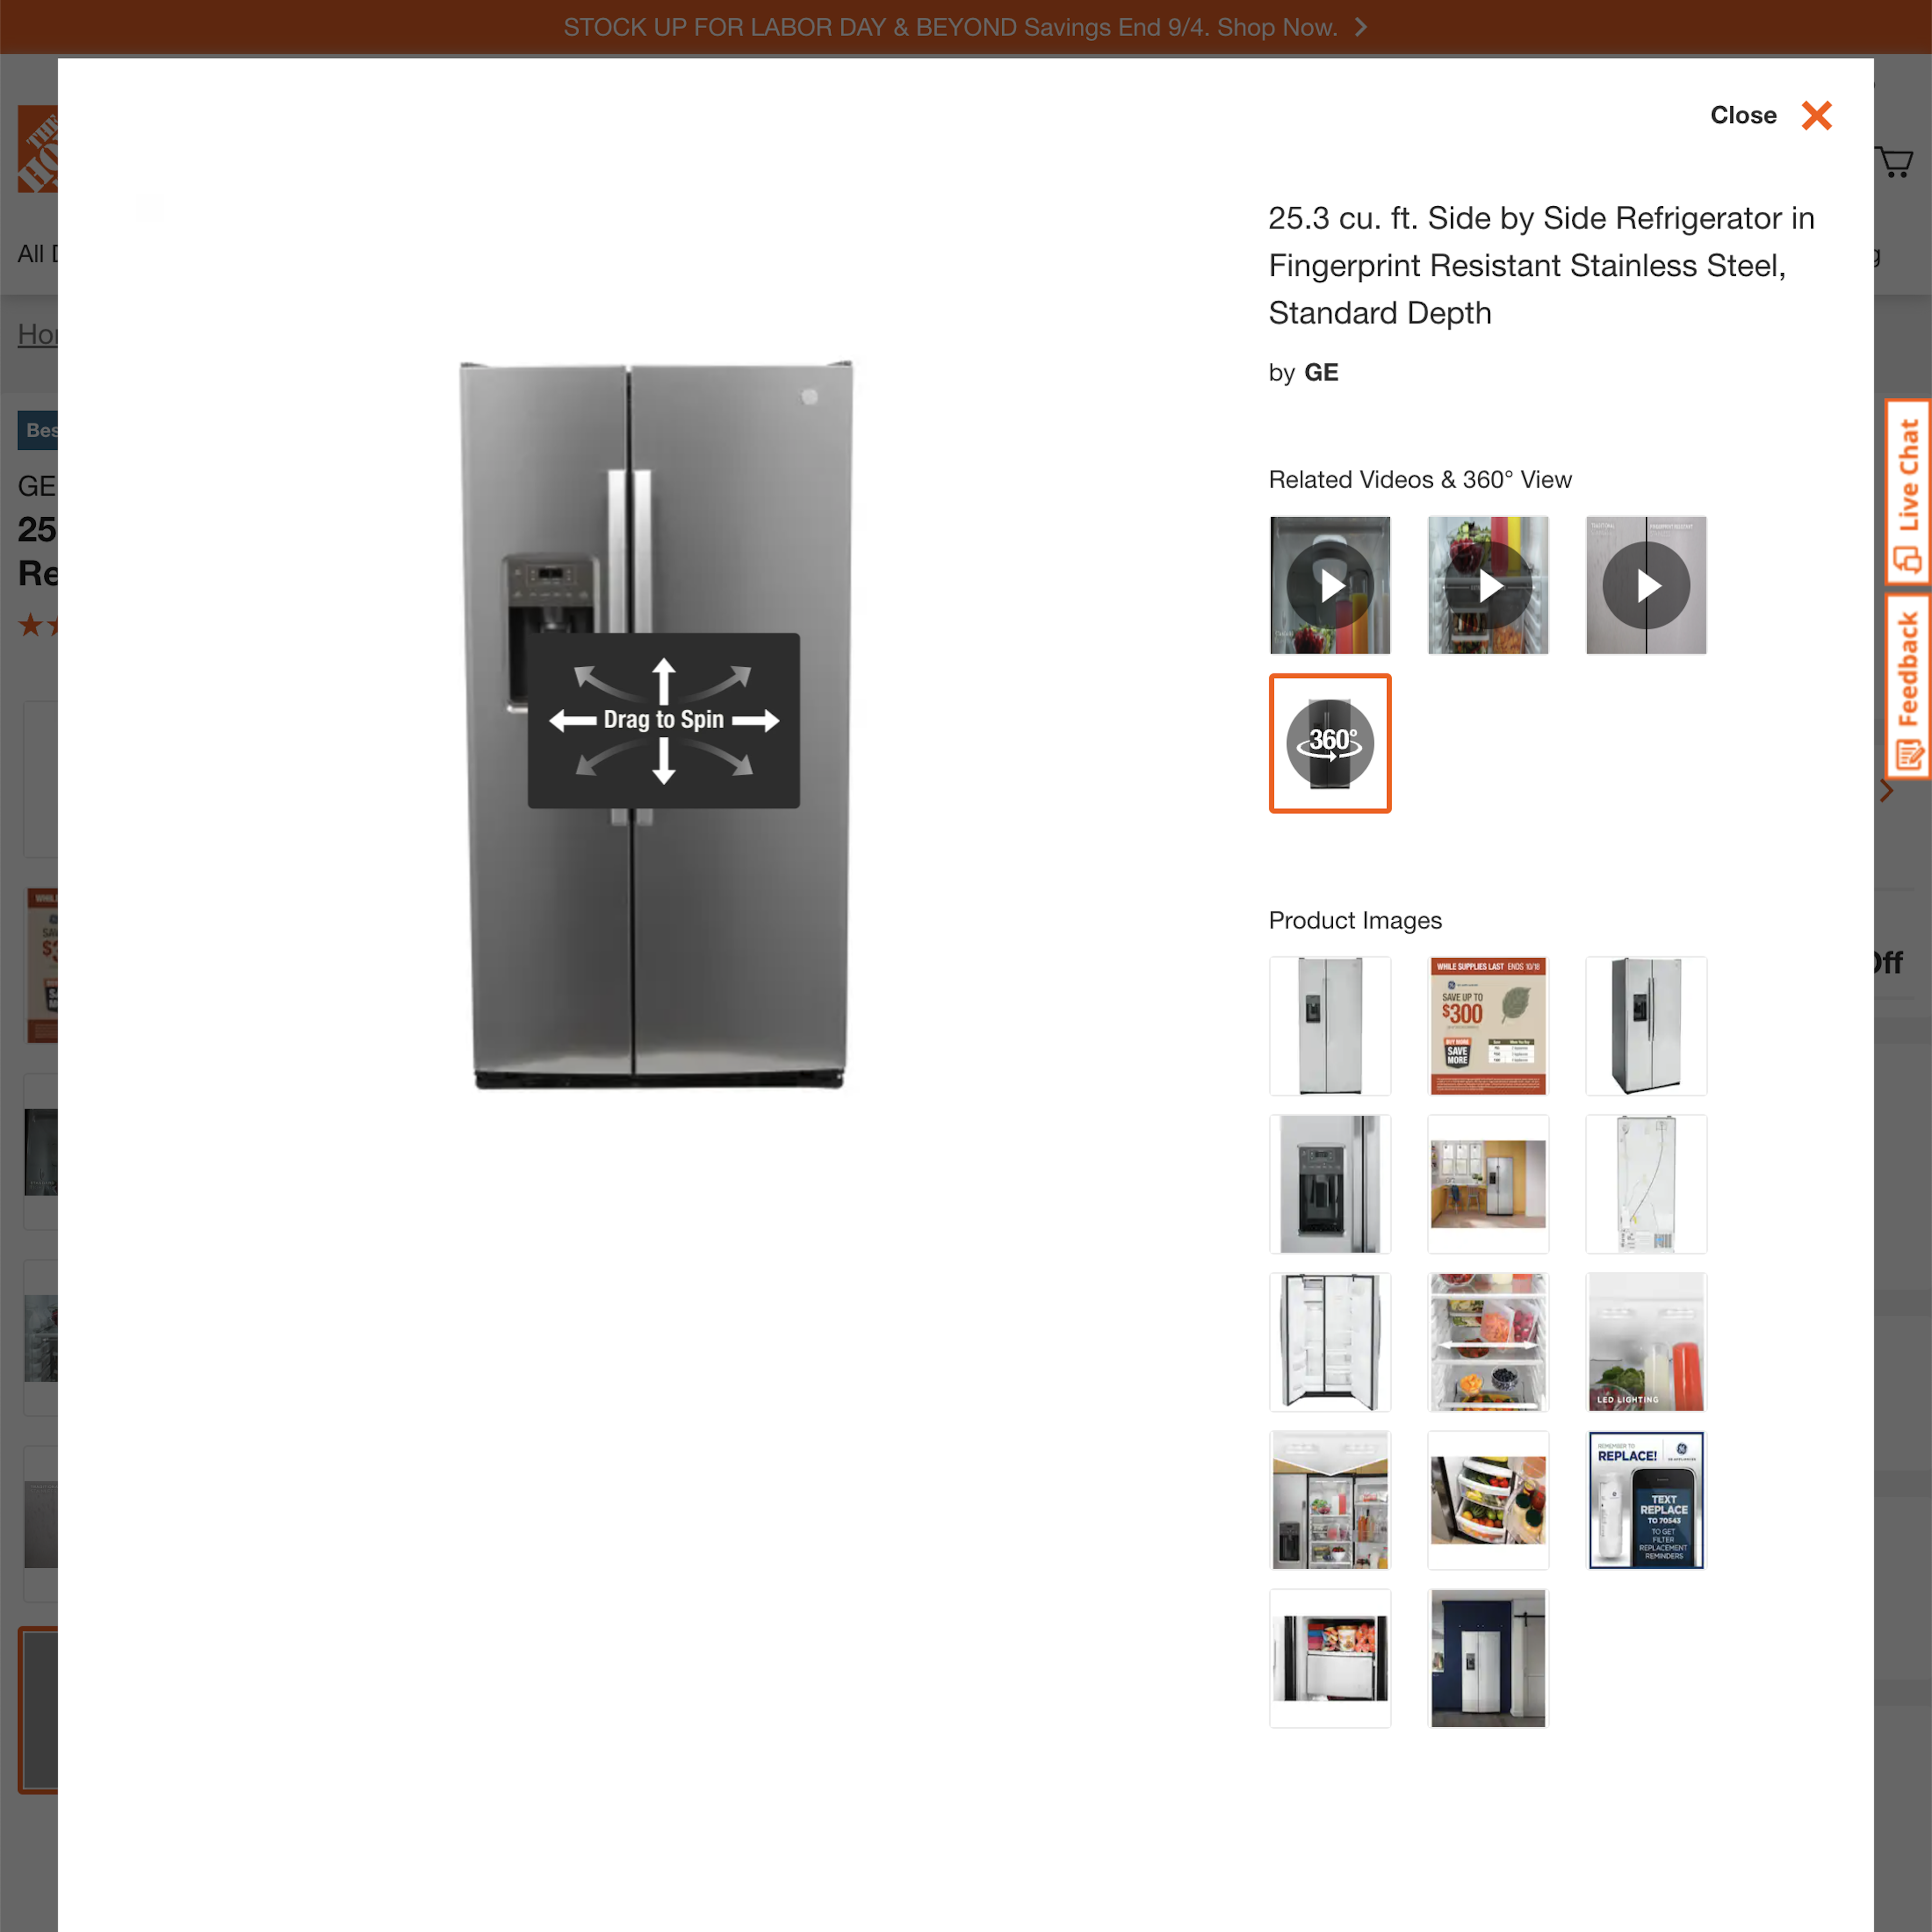 Desktop screenshot of Home Depot